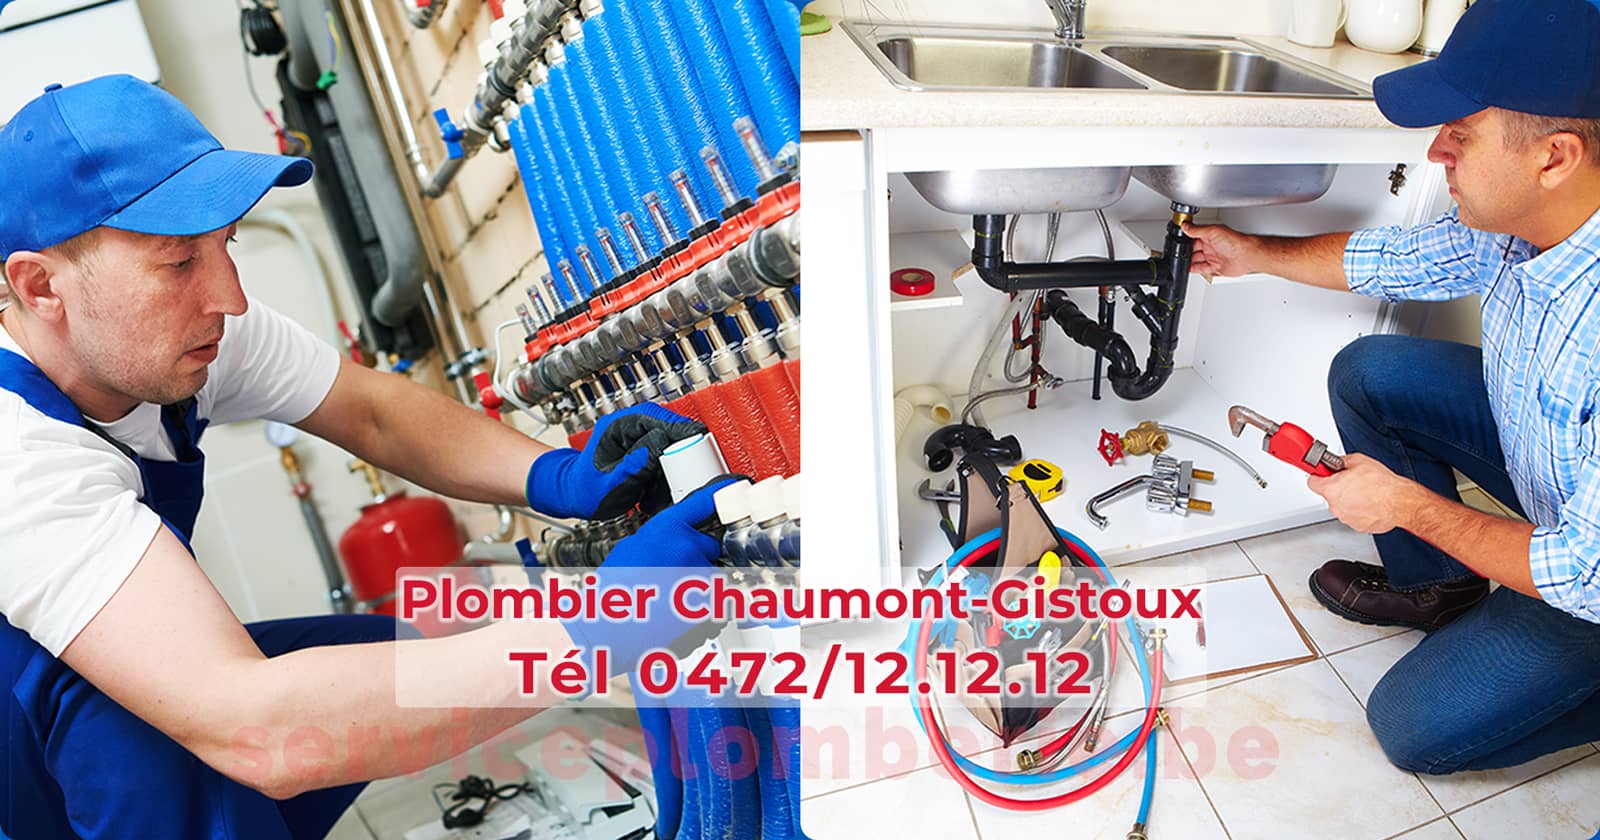 Plombier Chaumont-Gistoux Agréé Professionnel Service Plomberie Tél 0472/12.12.12